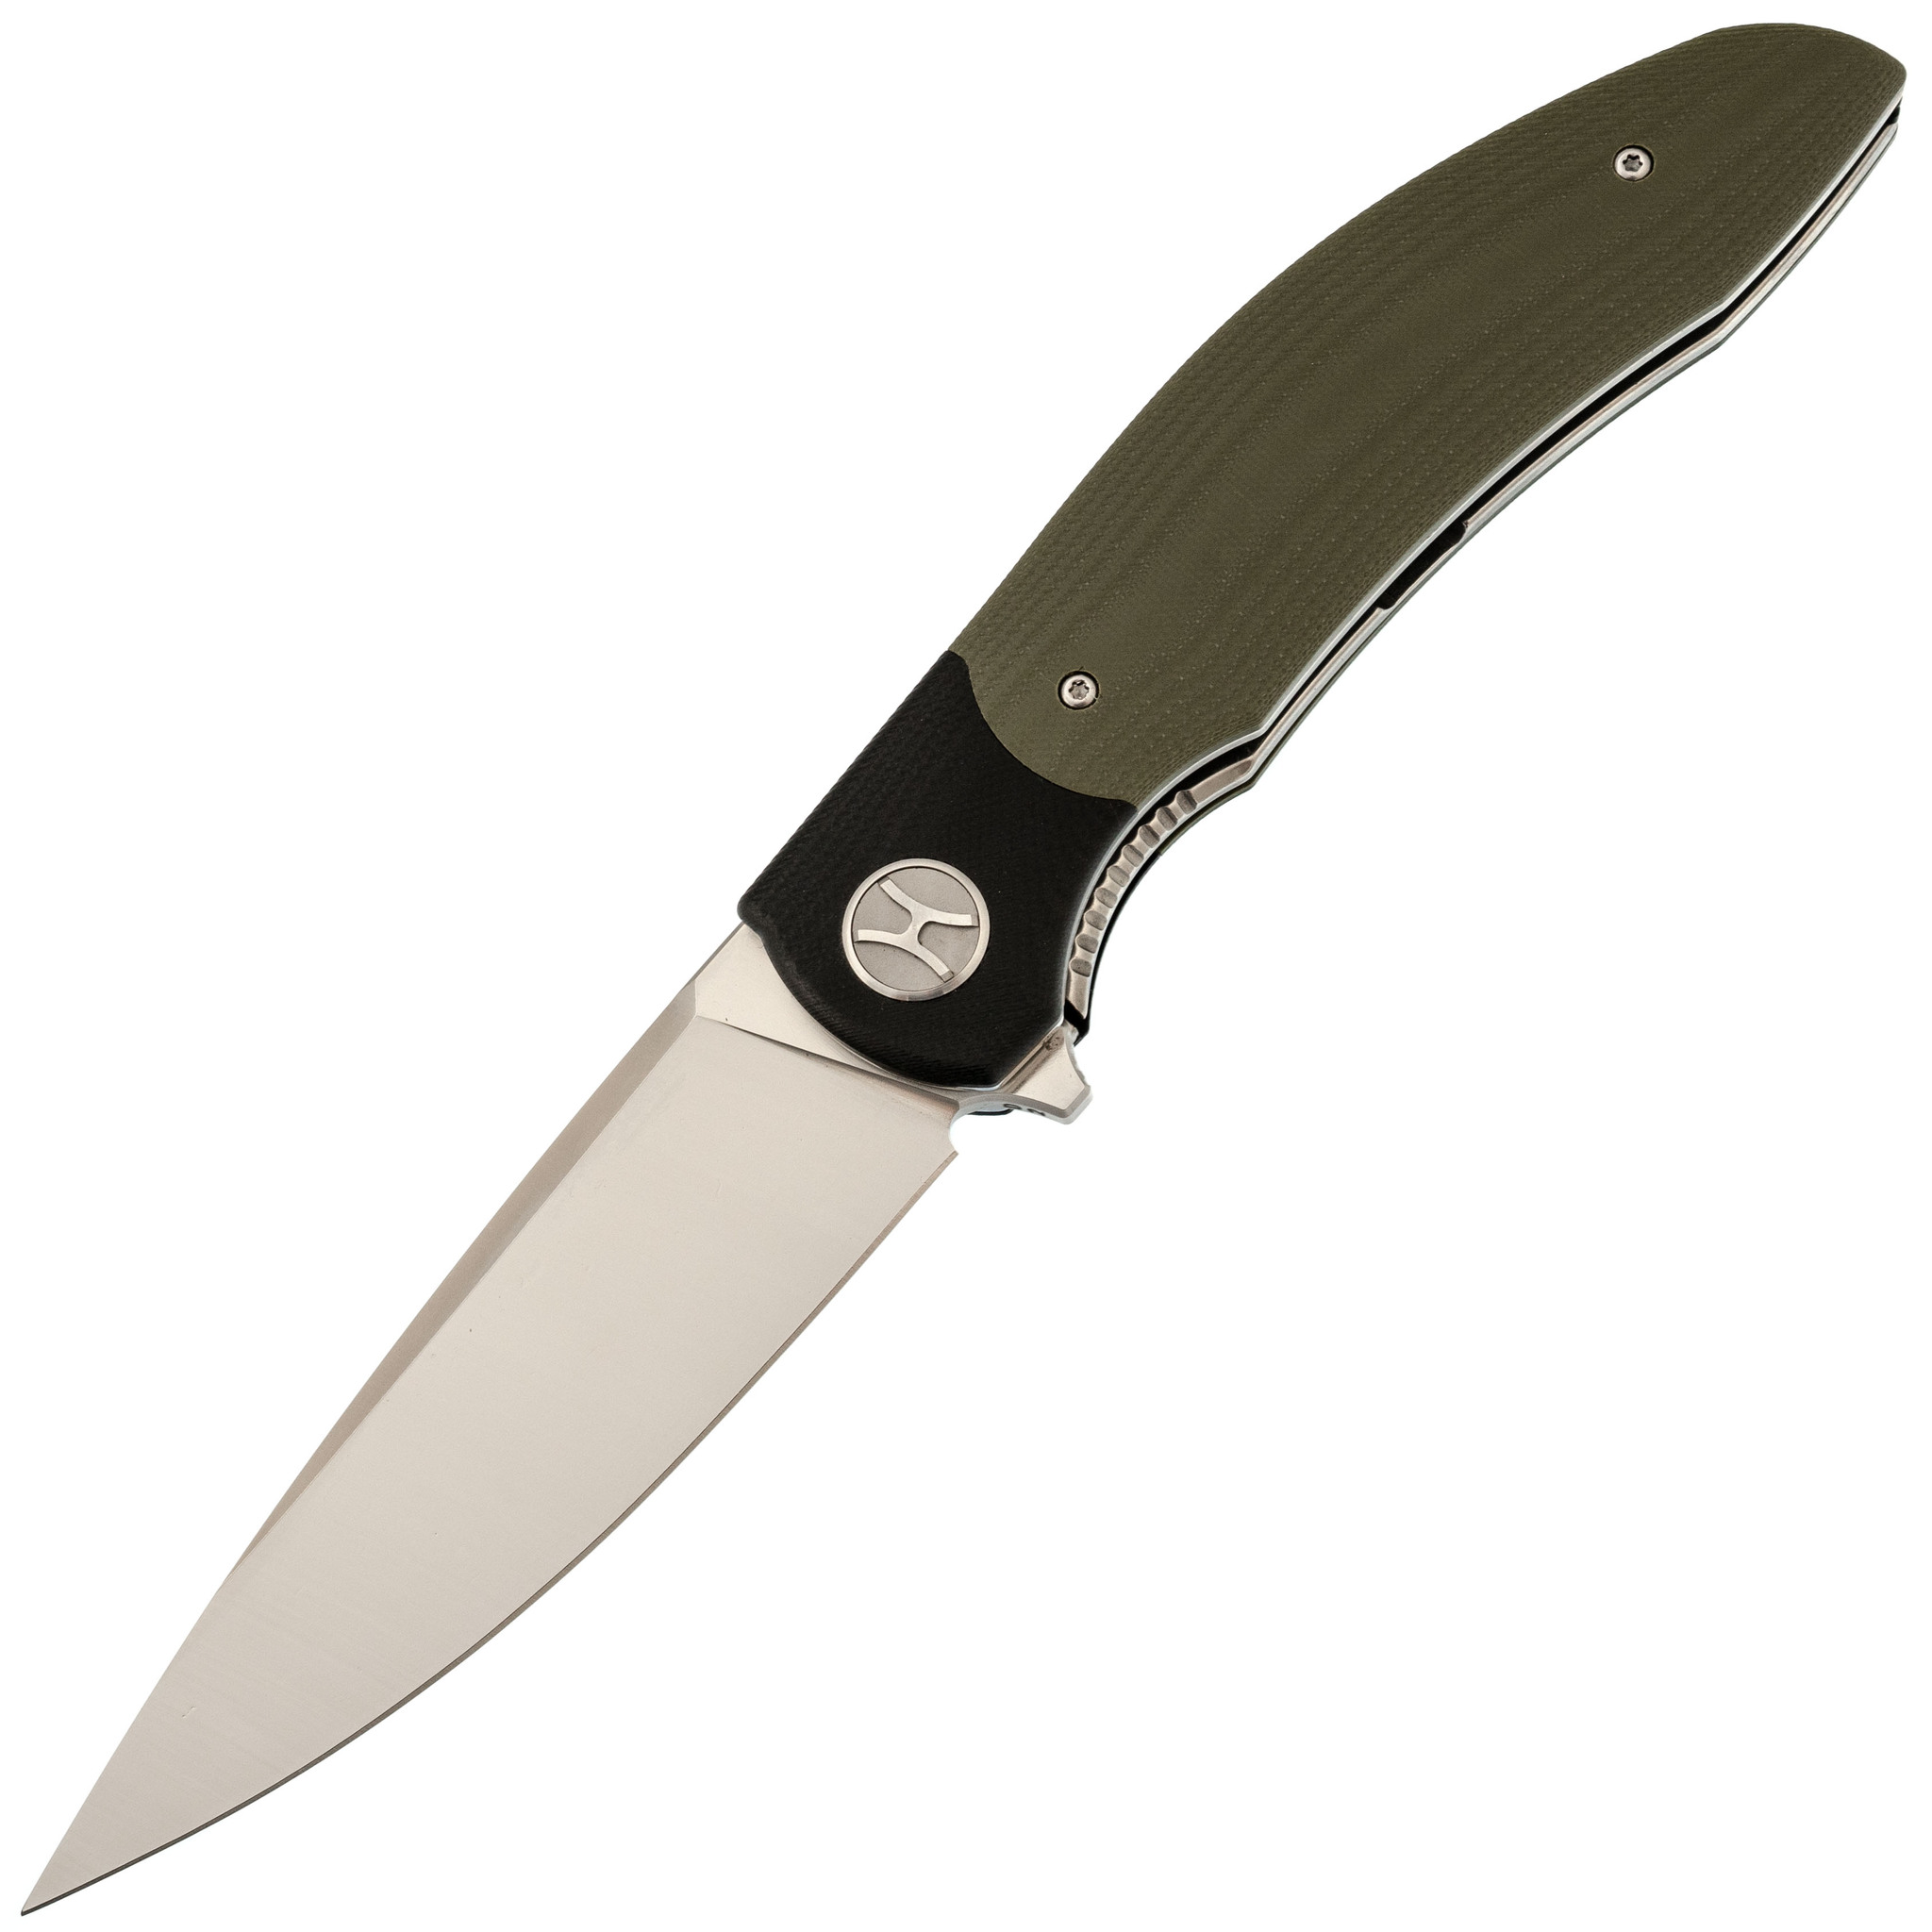 Большой складной нож Honor Tirex Green, сталь D2 набор victorinox swiss classic складной нож для овощей и разделочная доска красная рукоять